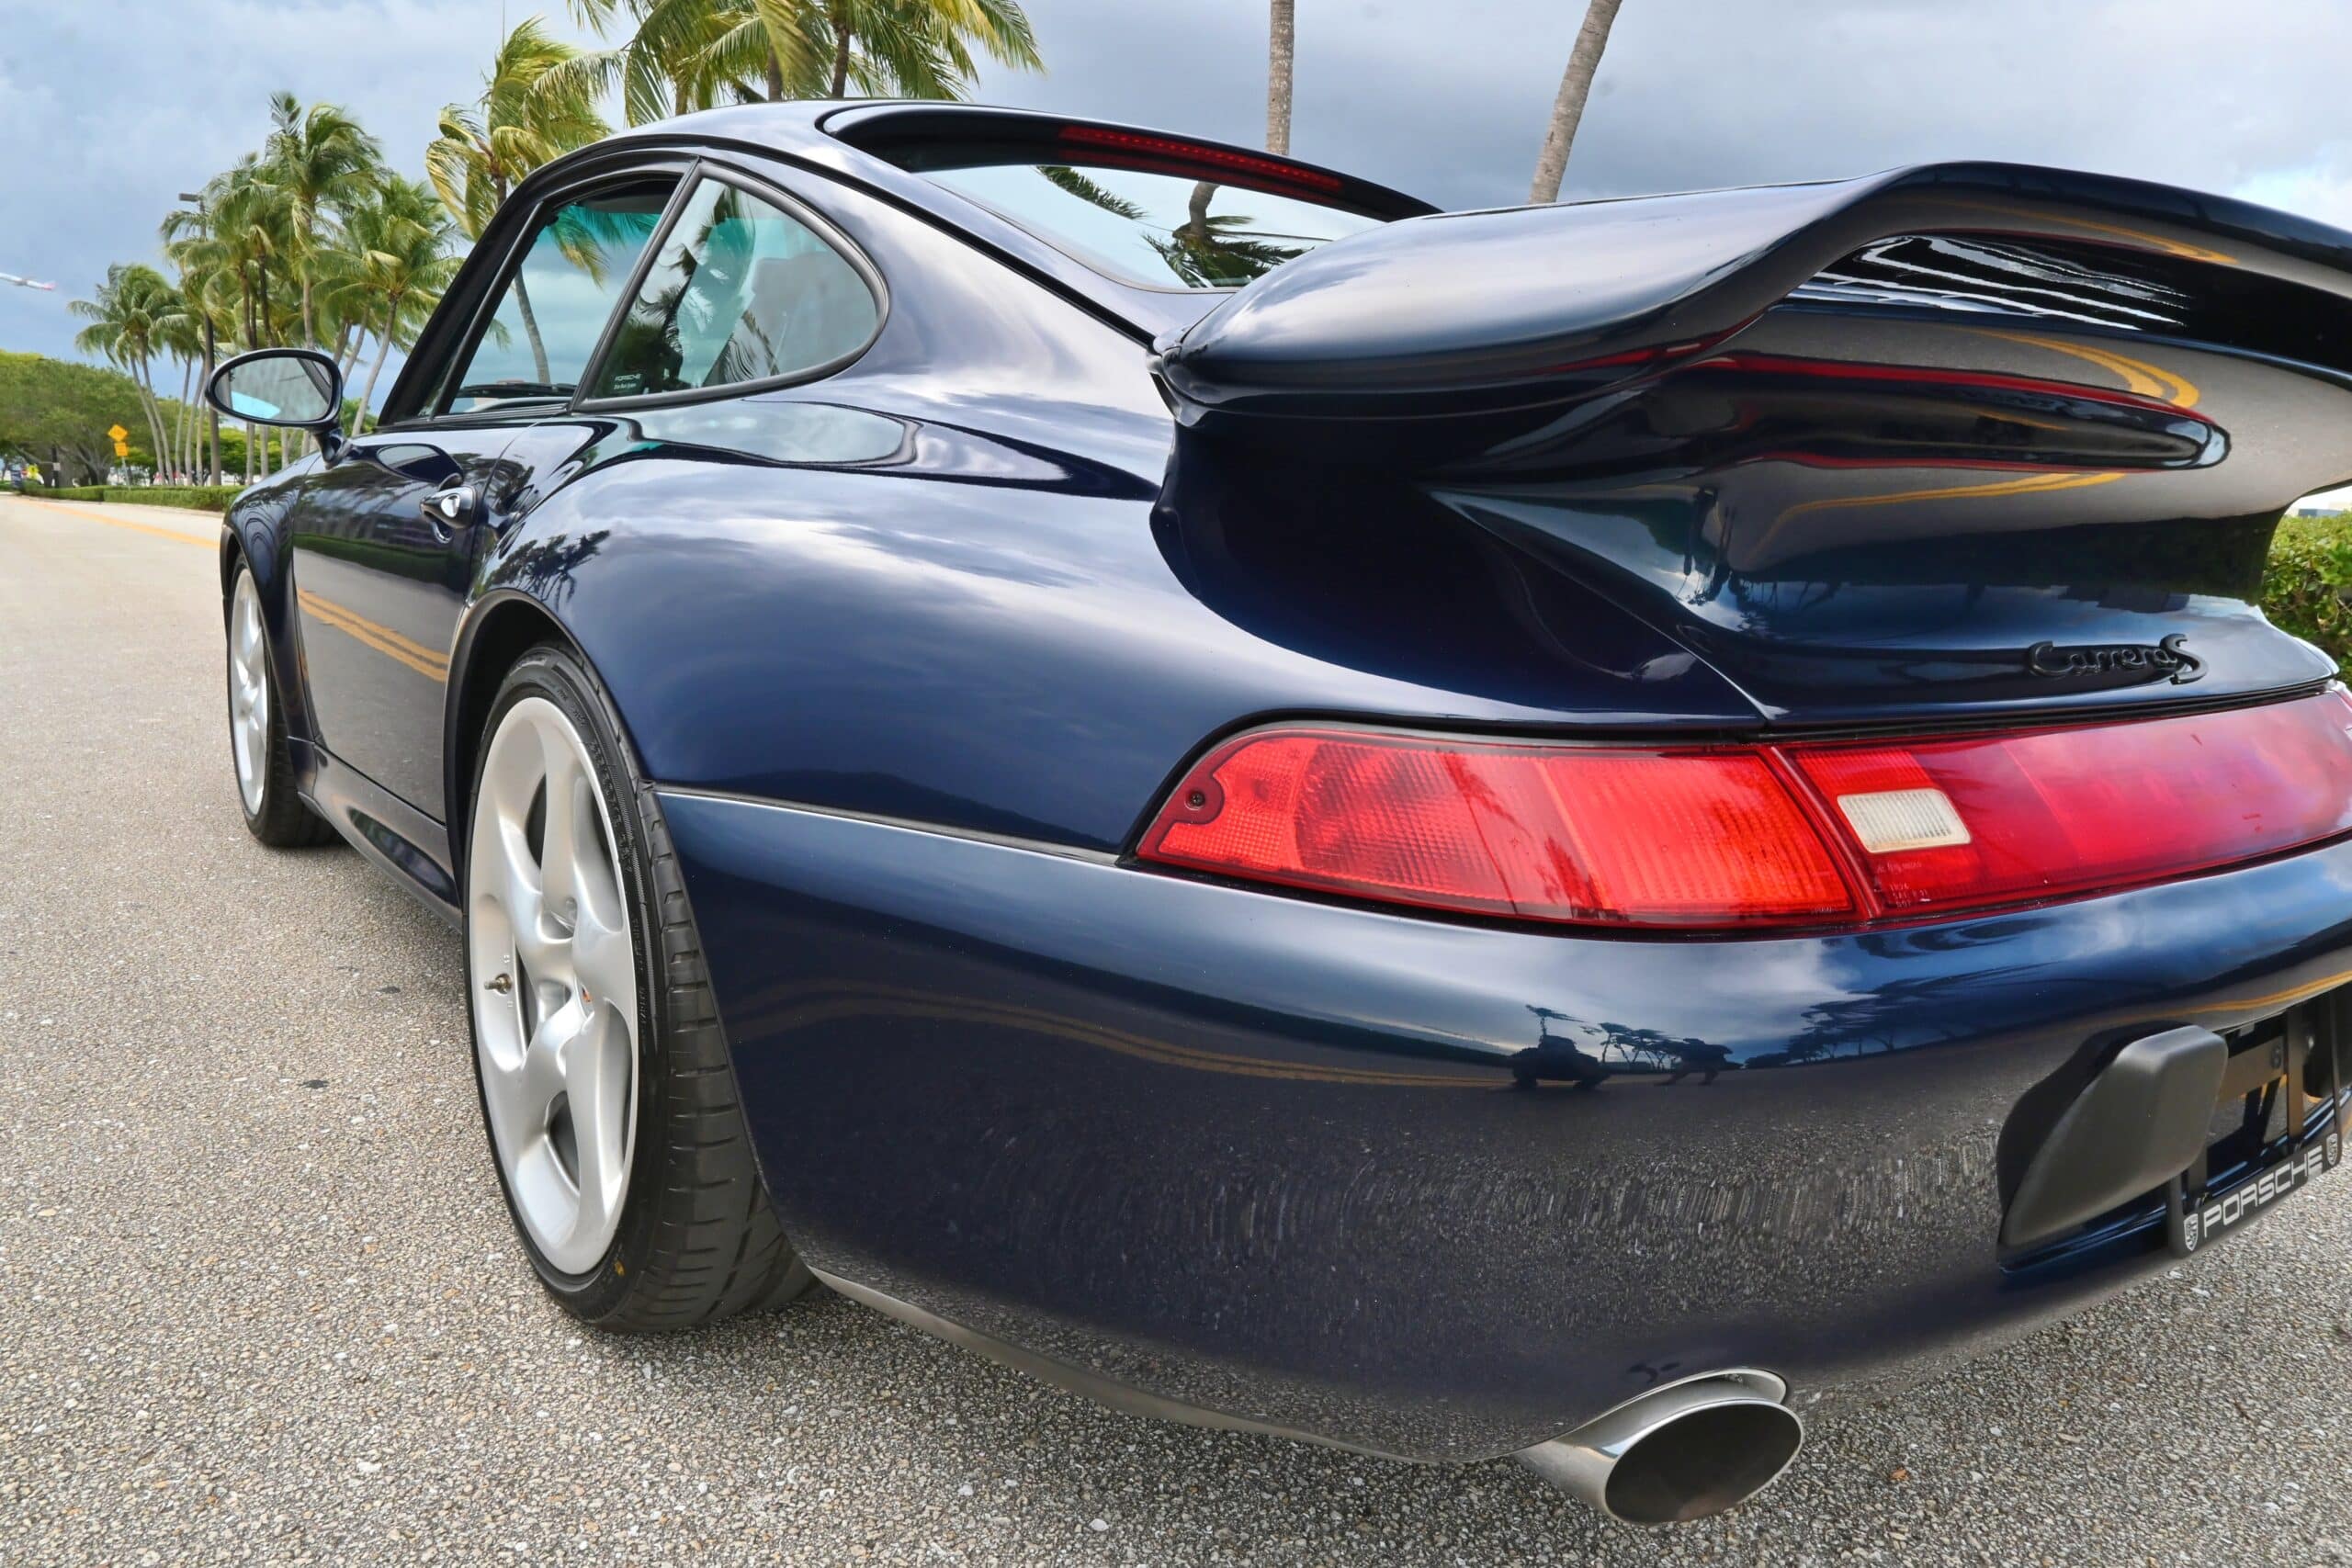 1998 Porsche 911 993 C2S Special order Ocean Blue – Factory Aerokit – Engine Rebuild – 6 Speed – Bilstein